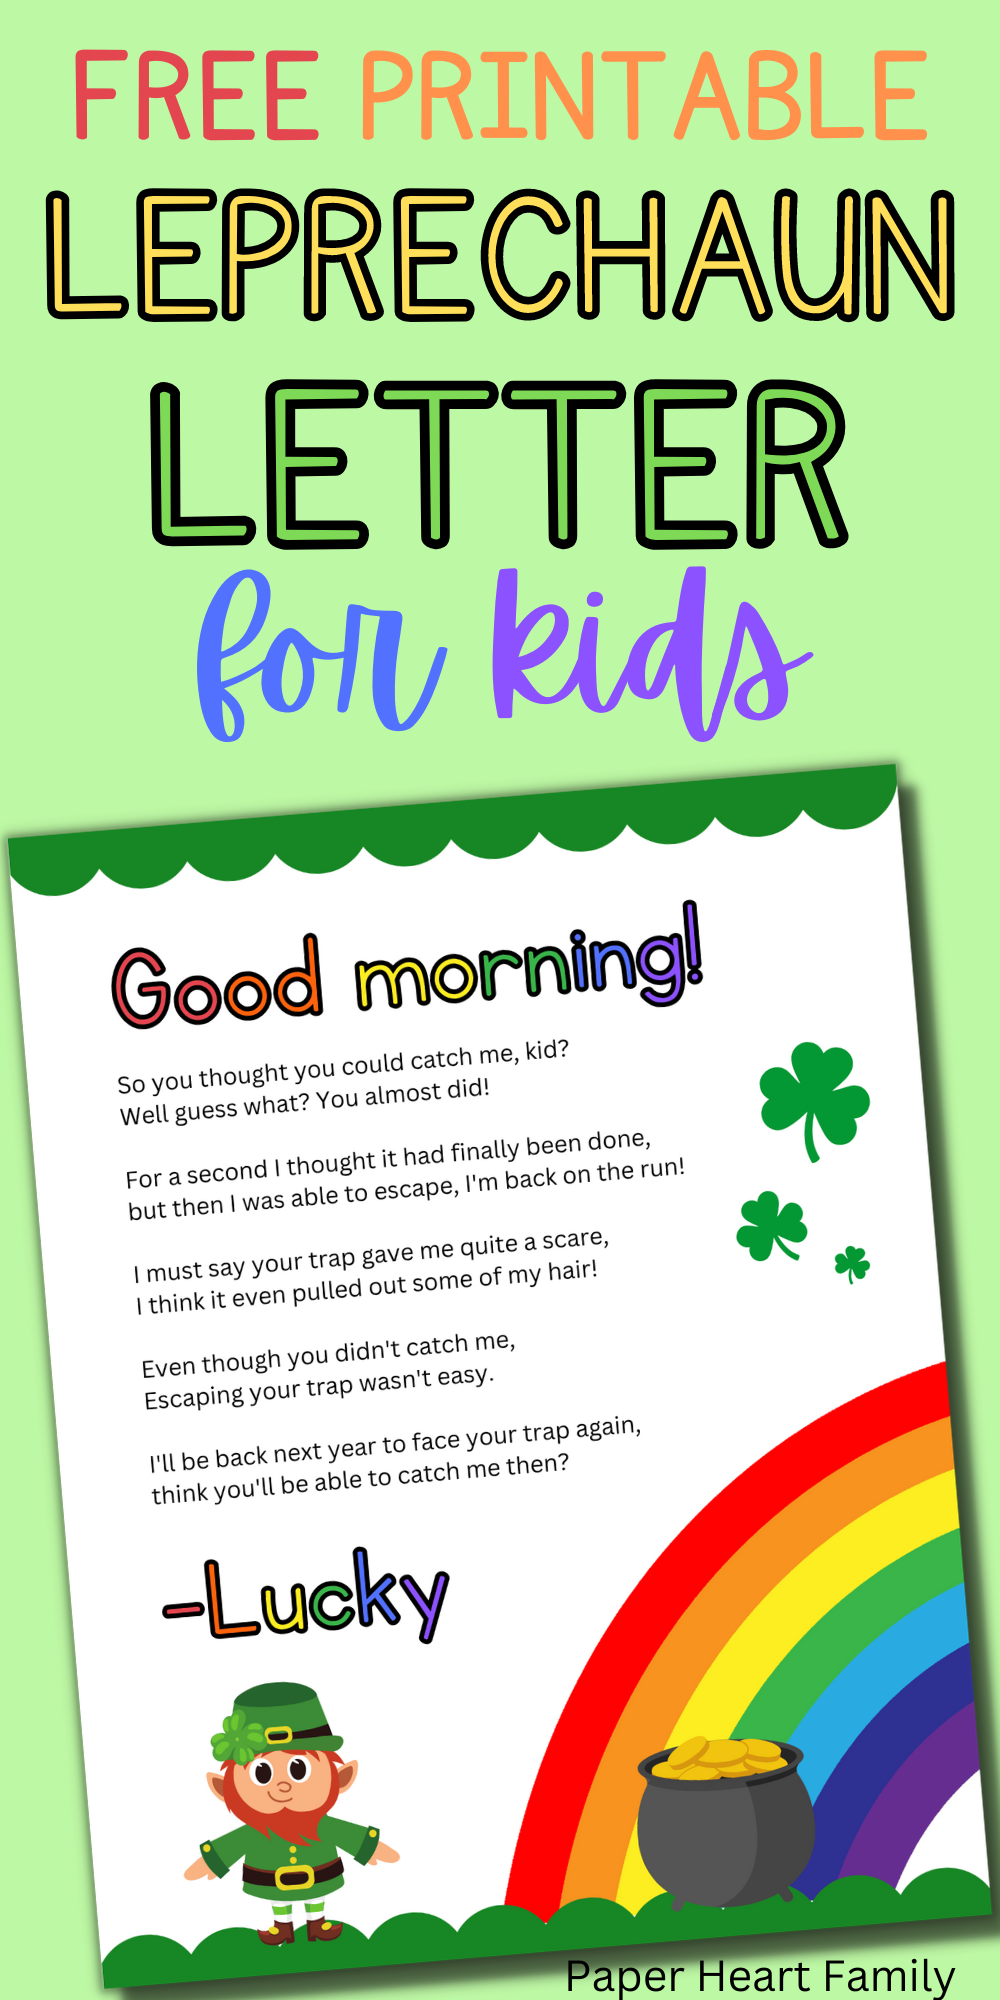 Free Printable Leprechaun Letter To Child | Letters For Kids, St in Free Printable Leprechaun Notes